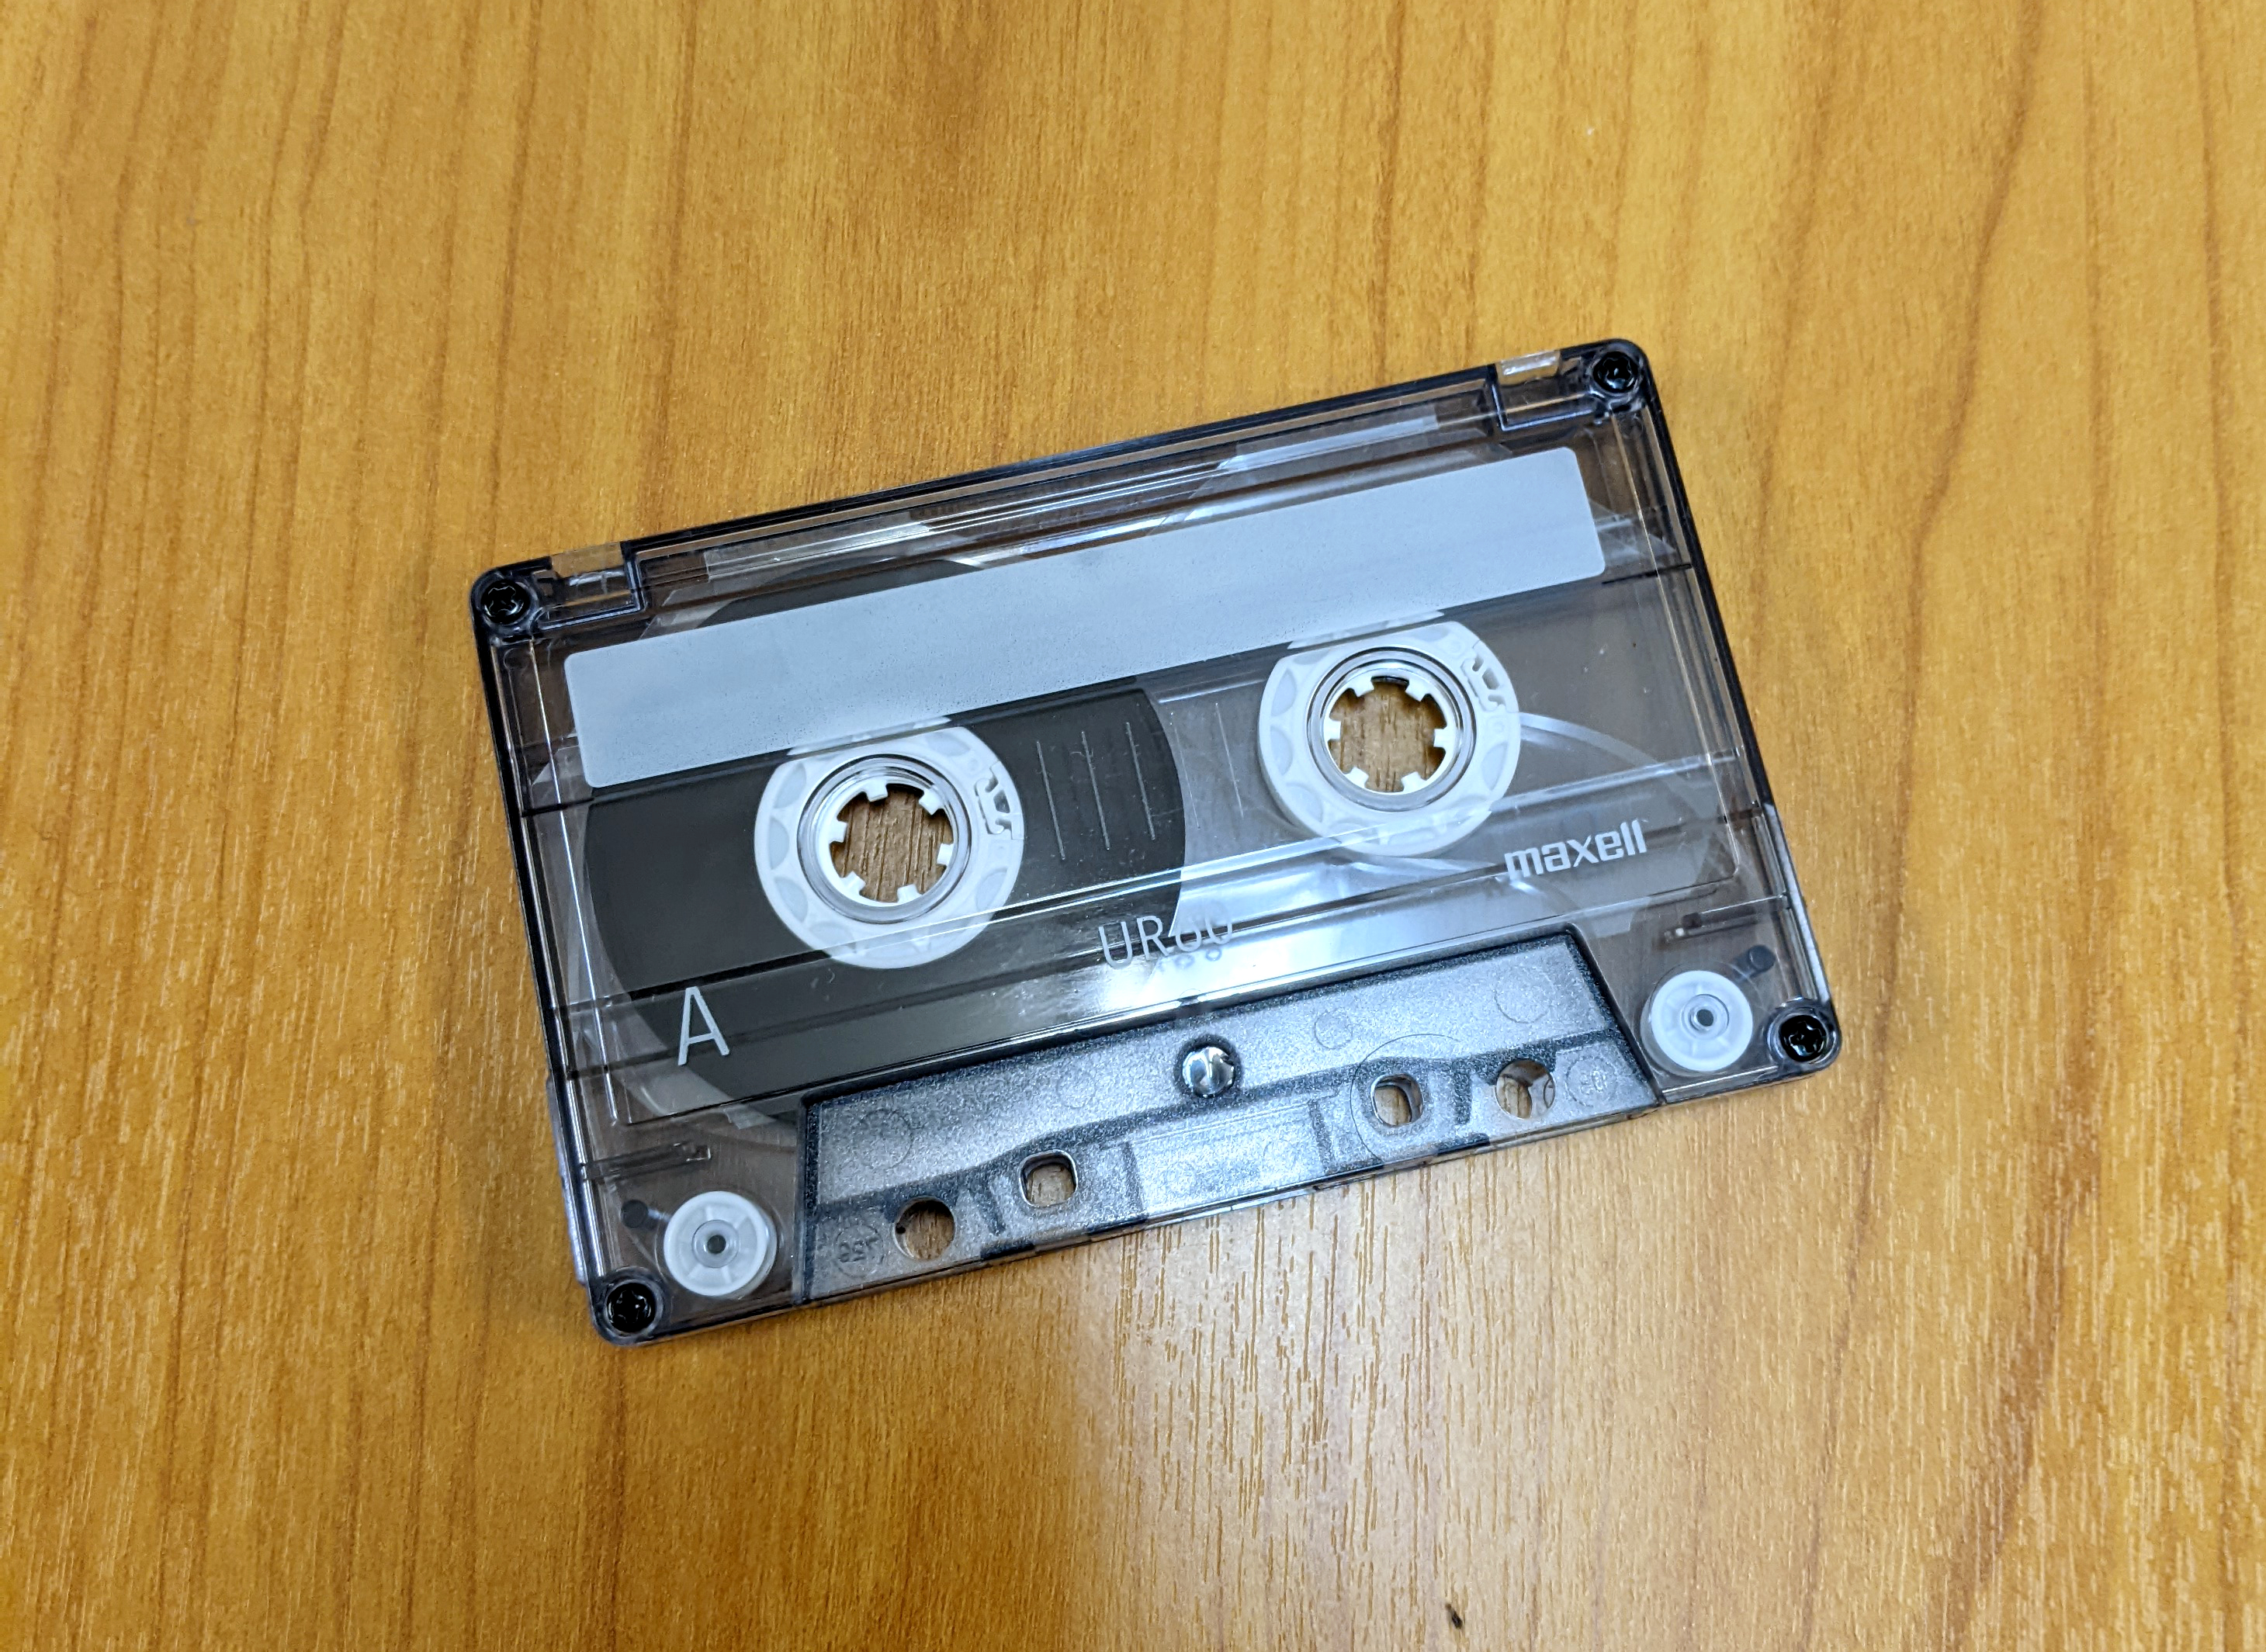 カセットテープ